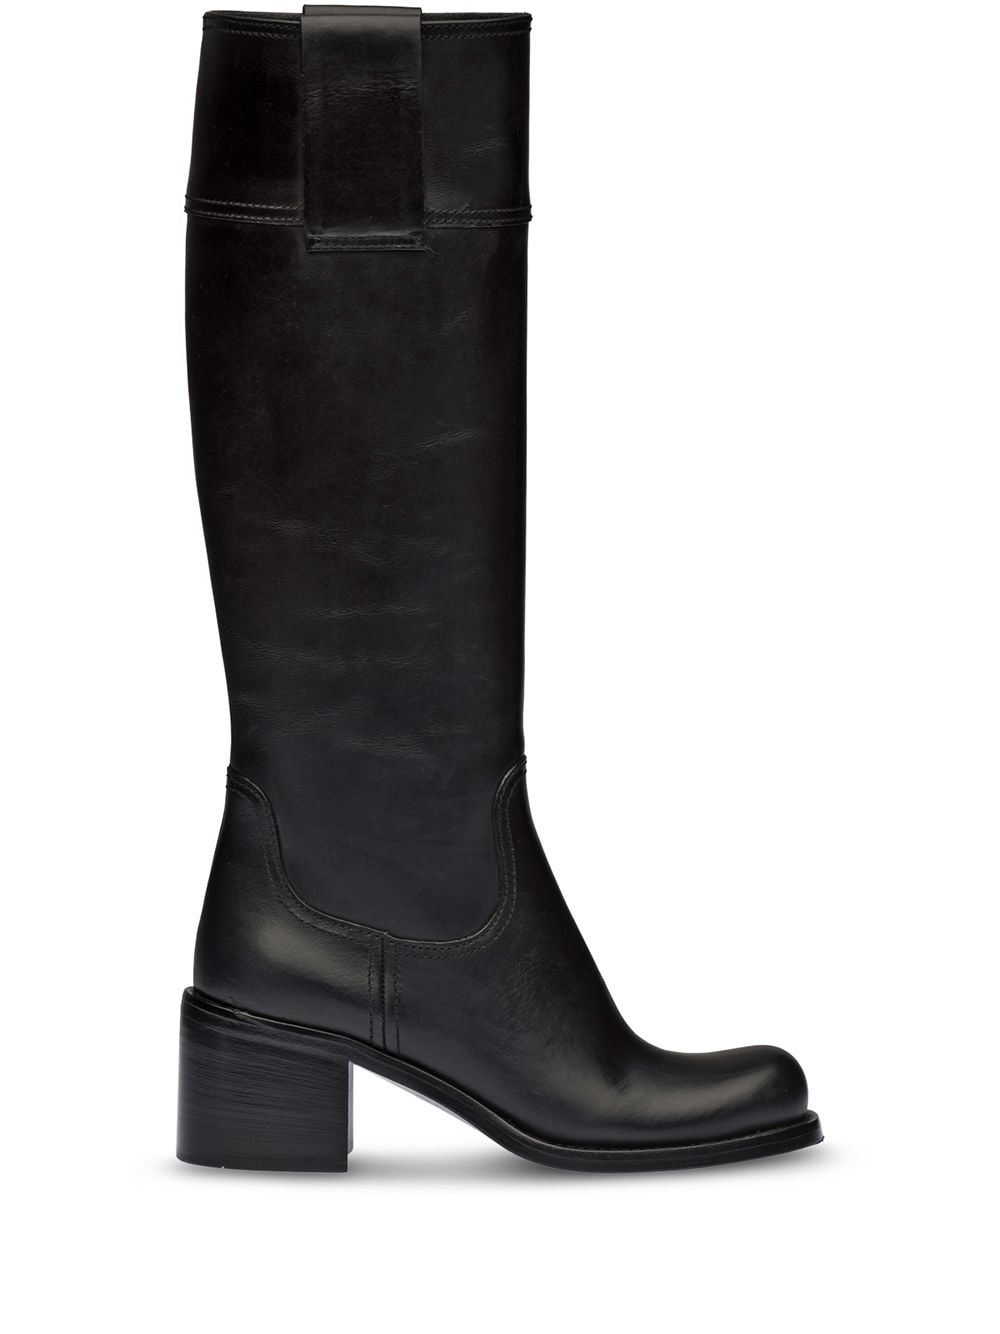 Leather Boots дамски обувки Miu Miu 840835906_39